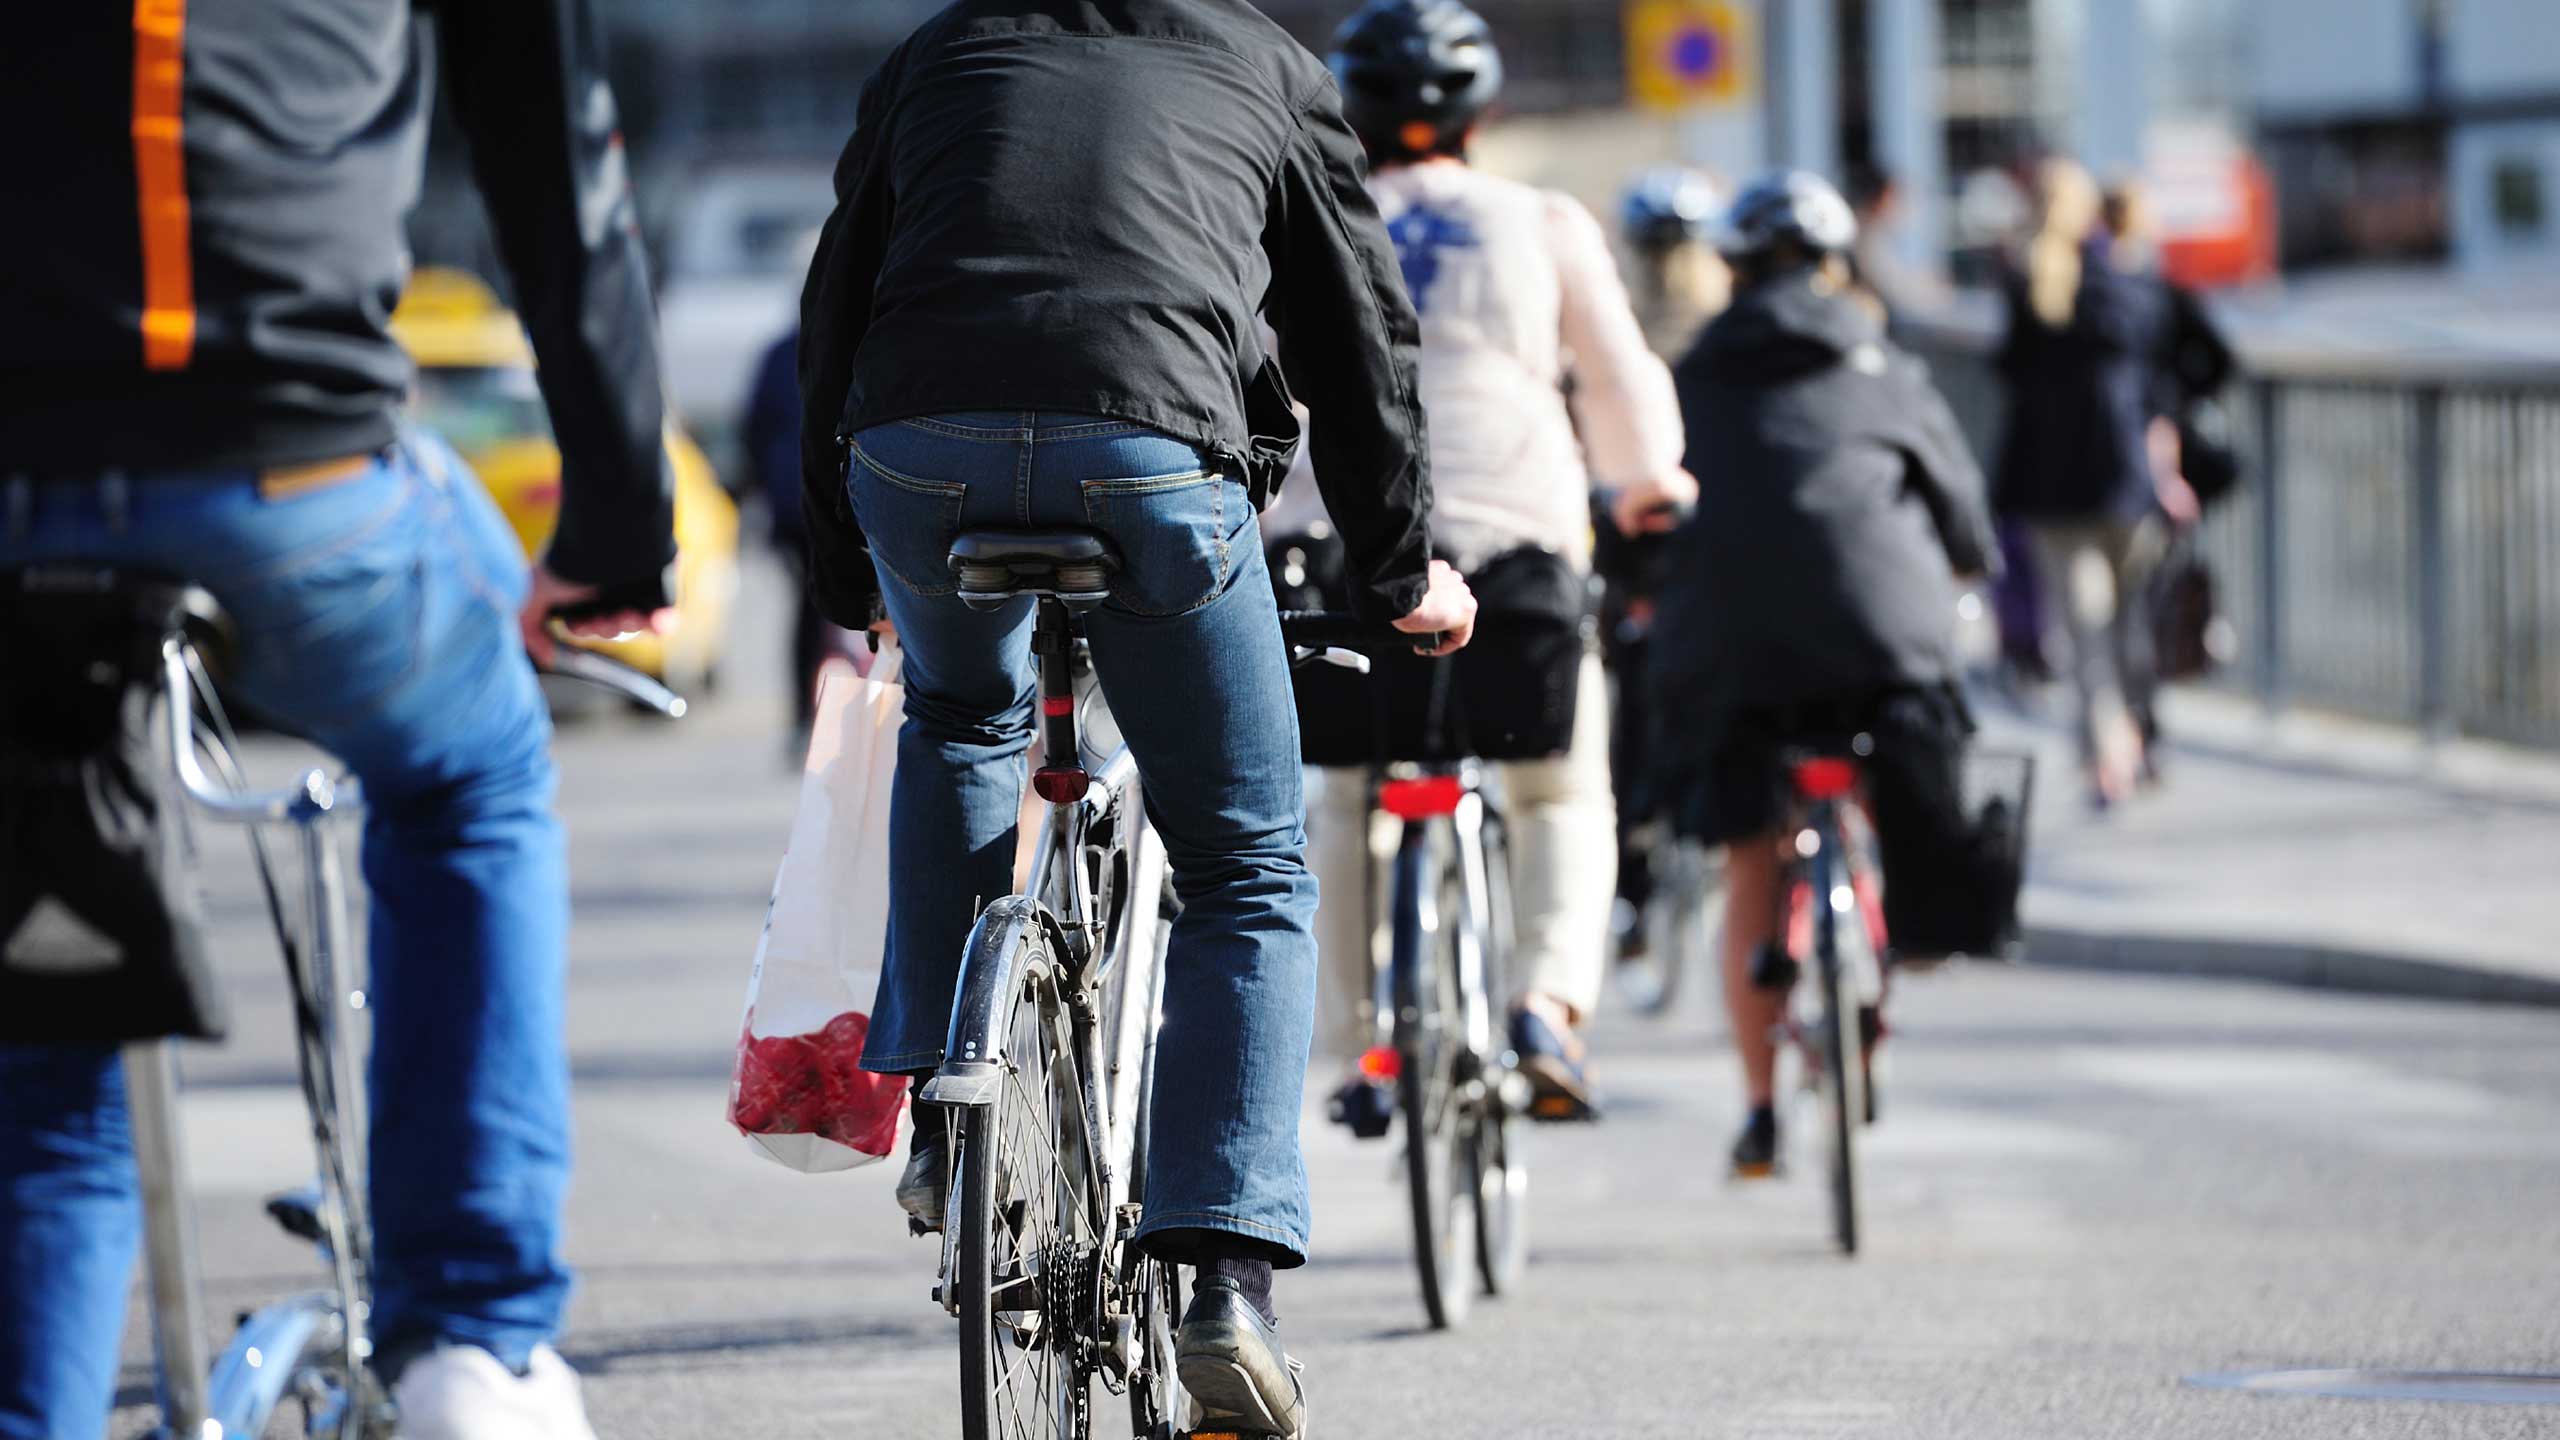 Mehrere Radfahrende (Ansicht von hinten) in einer typischen Alltagssituation. Ein Radfahrer hat eine Einkaufstüte am Lenker.